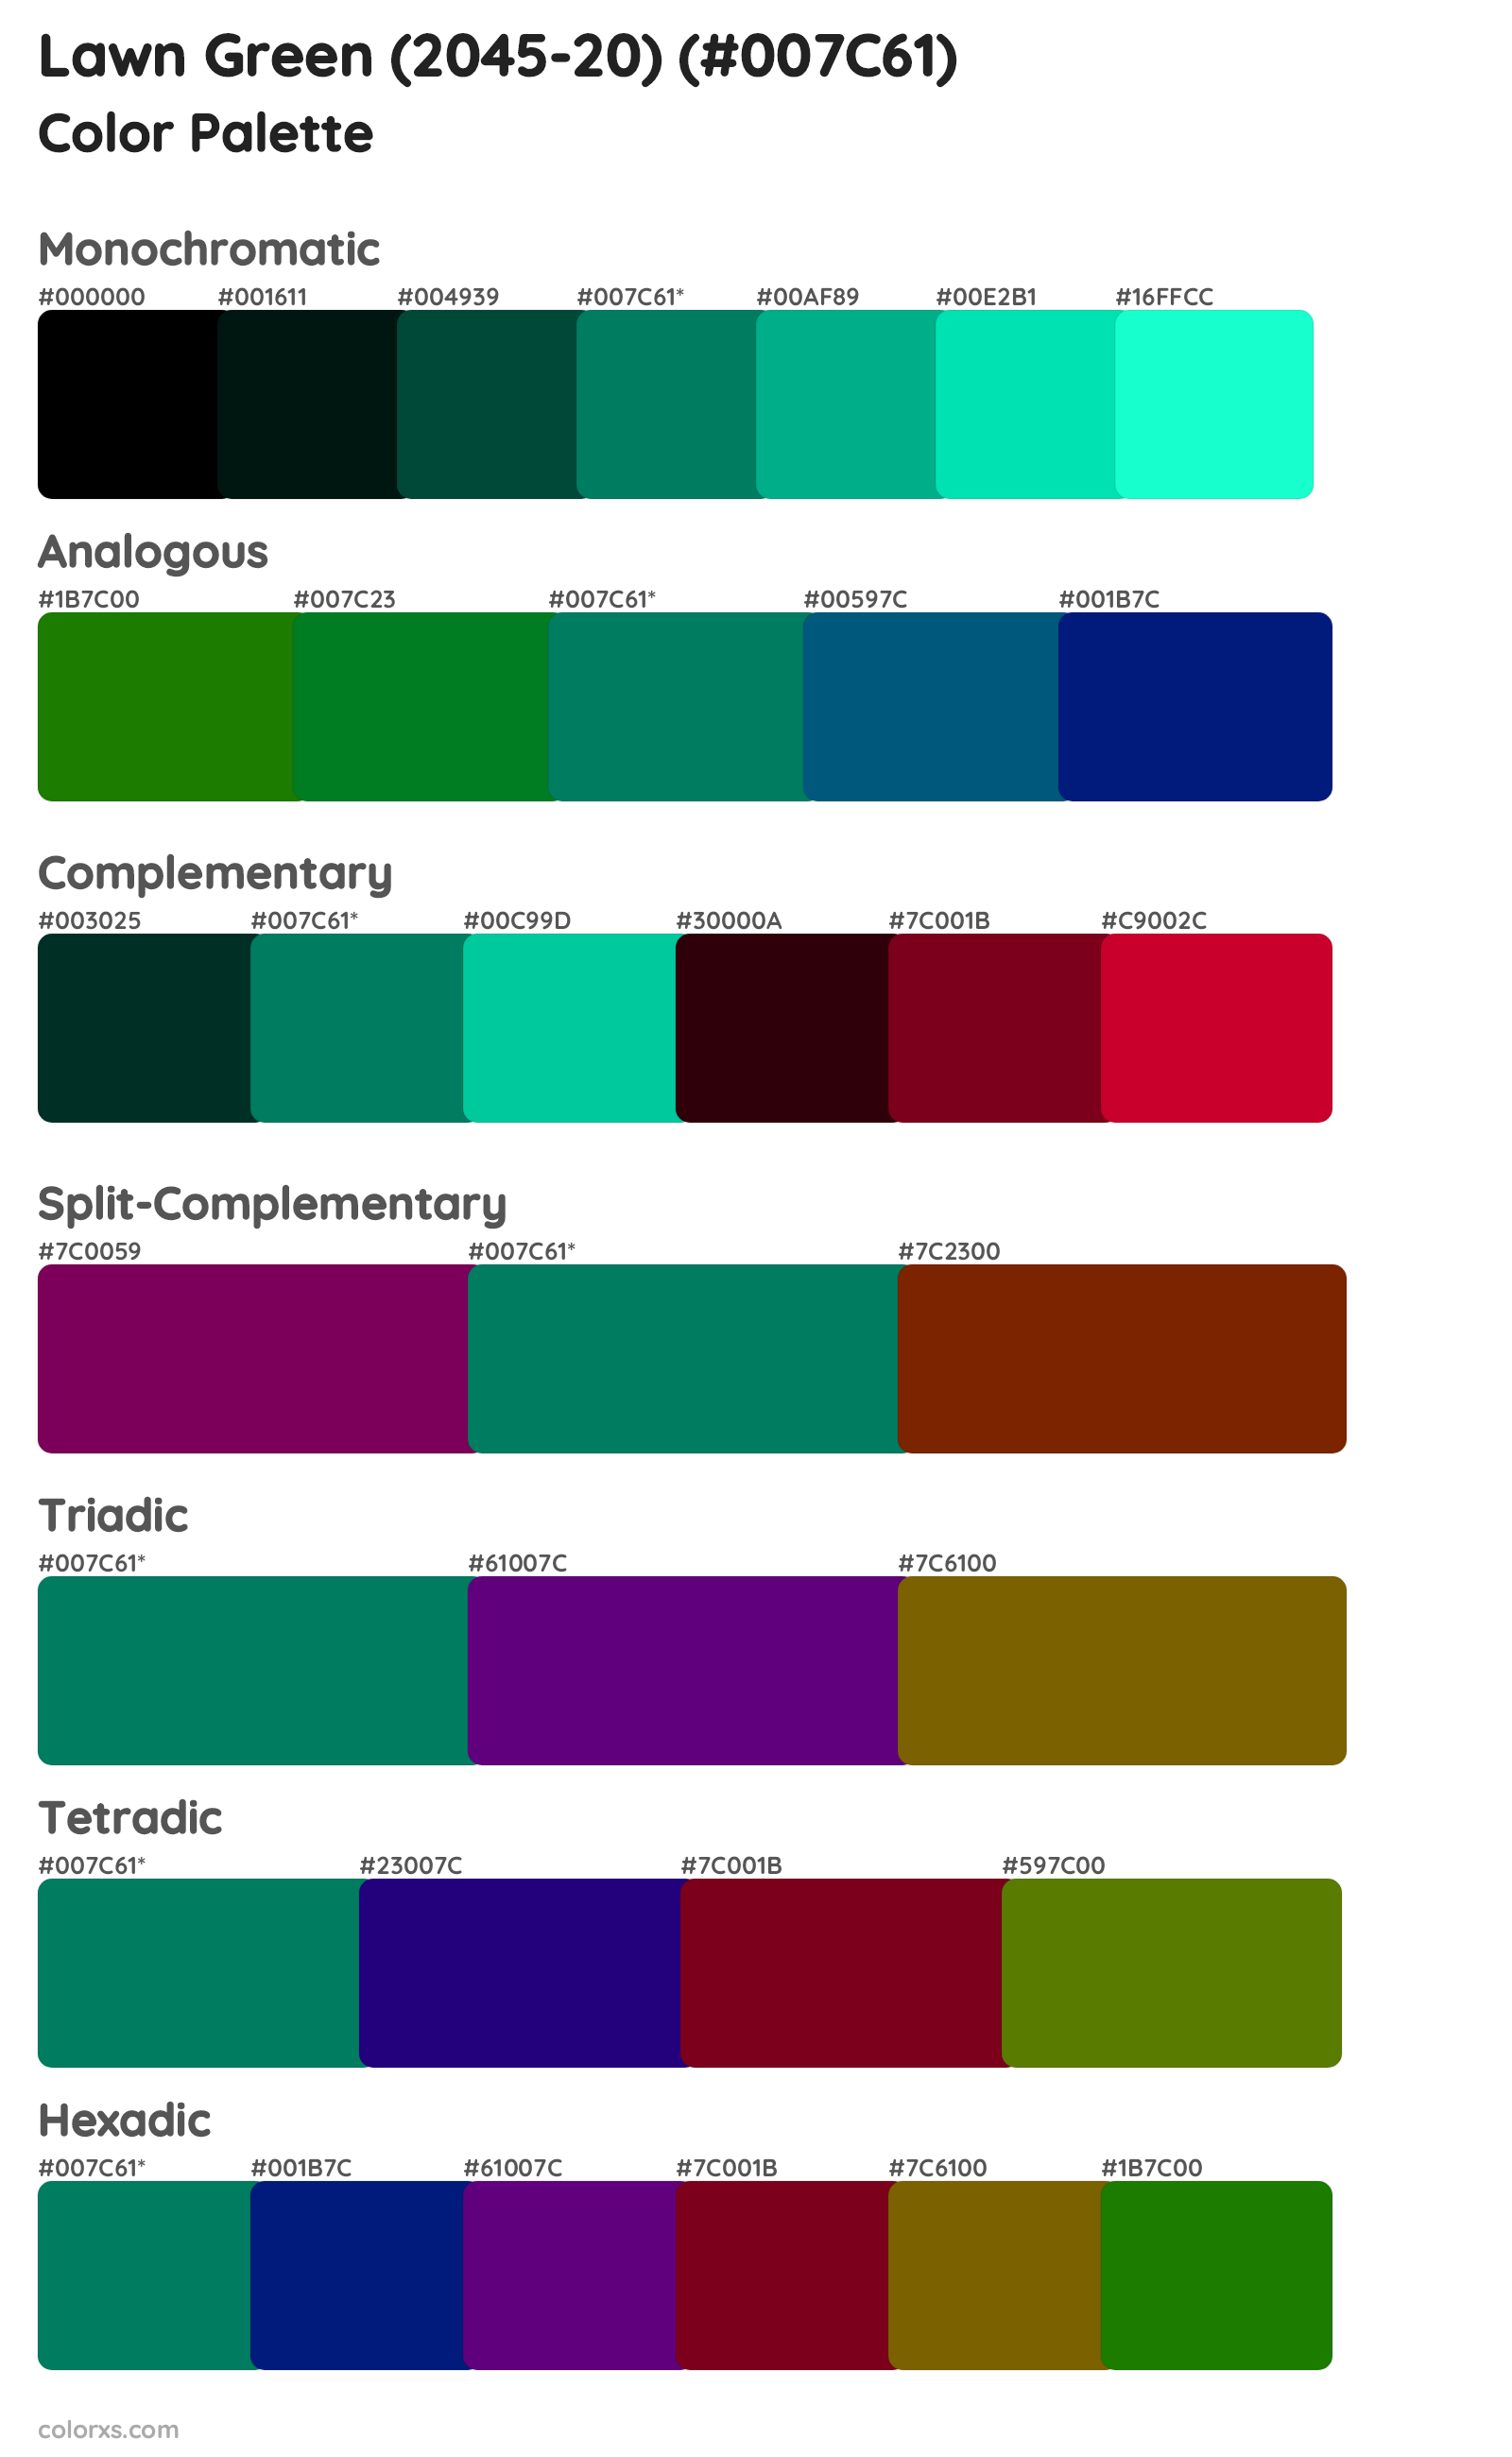 Lawn Green (2045-20) Color Scheme Palettes